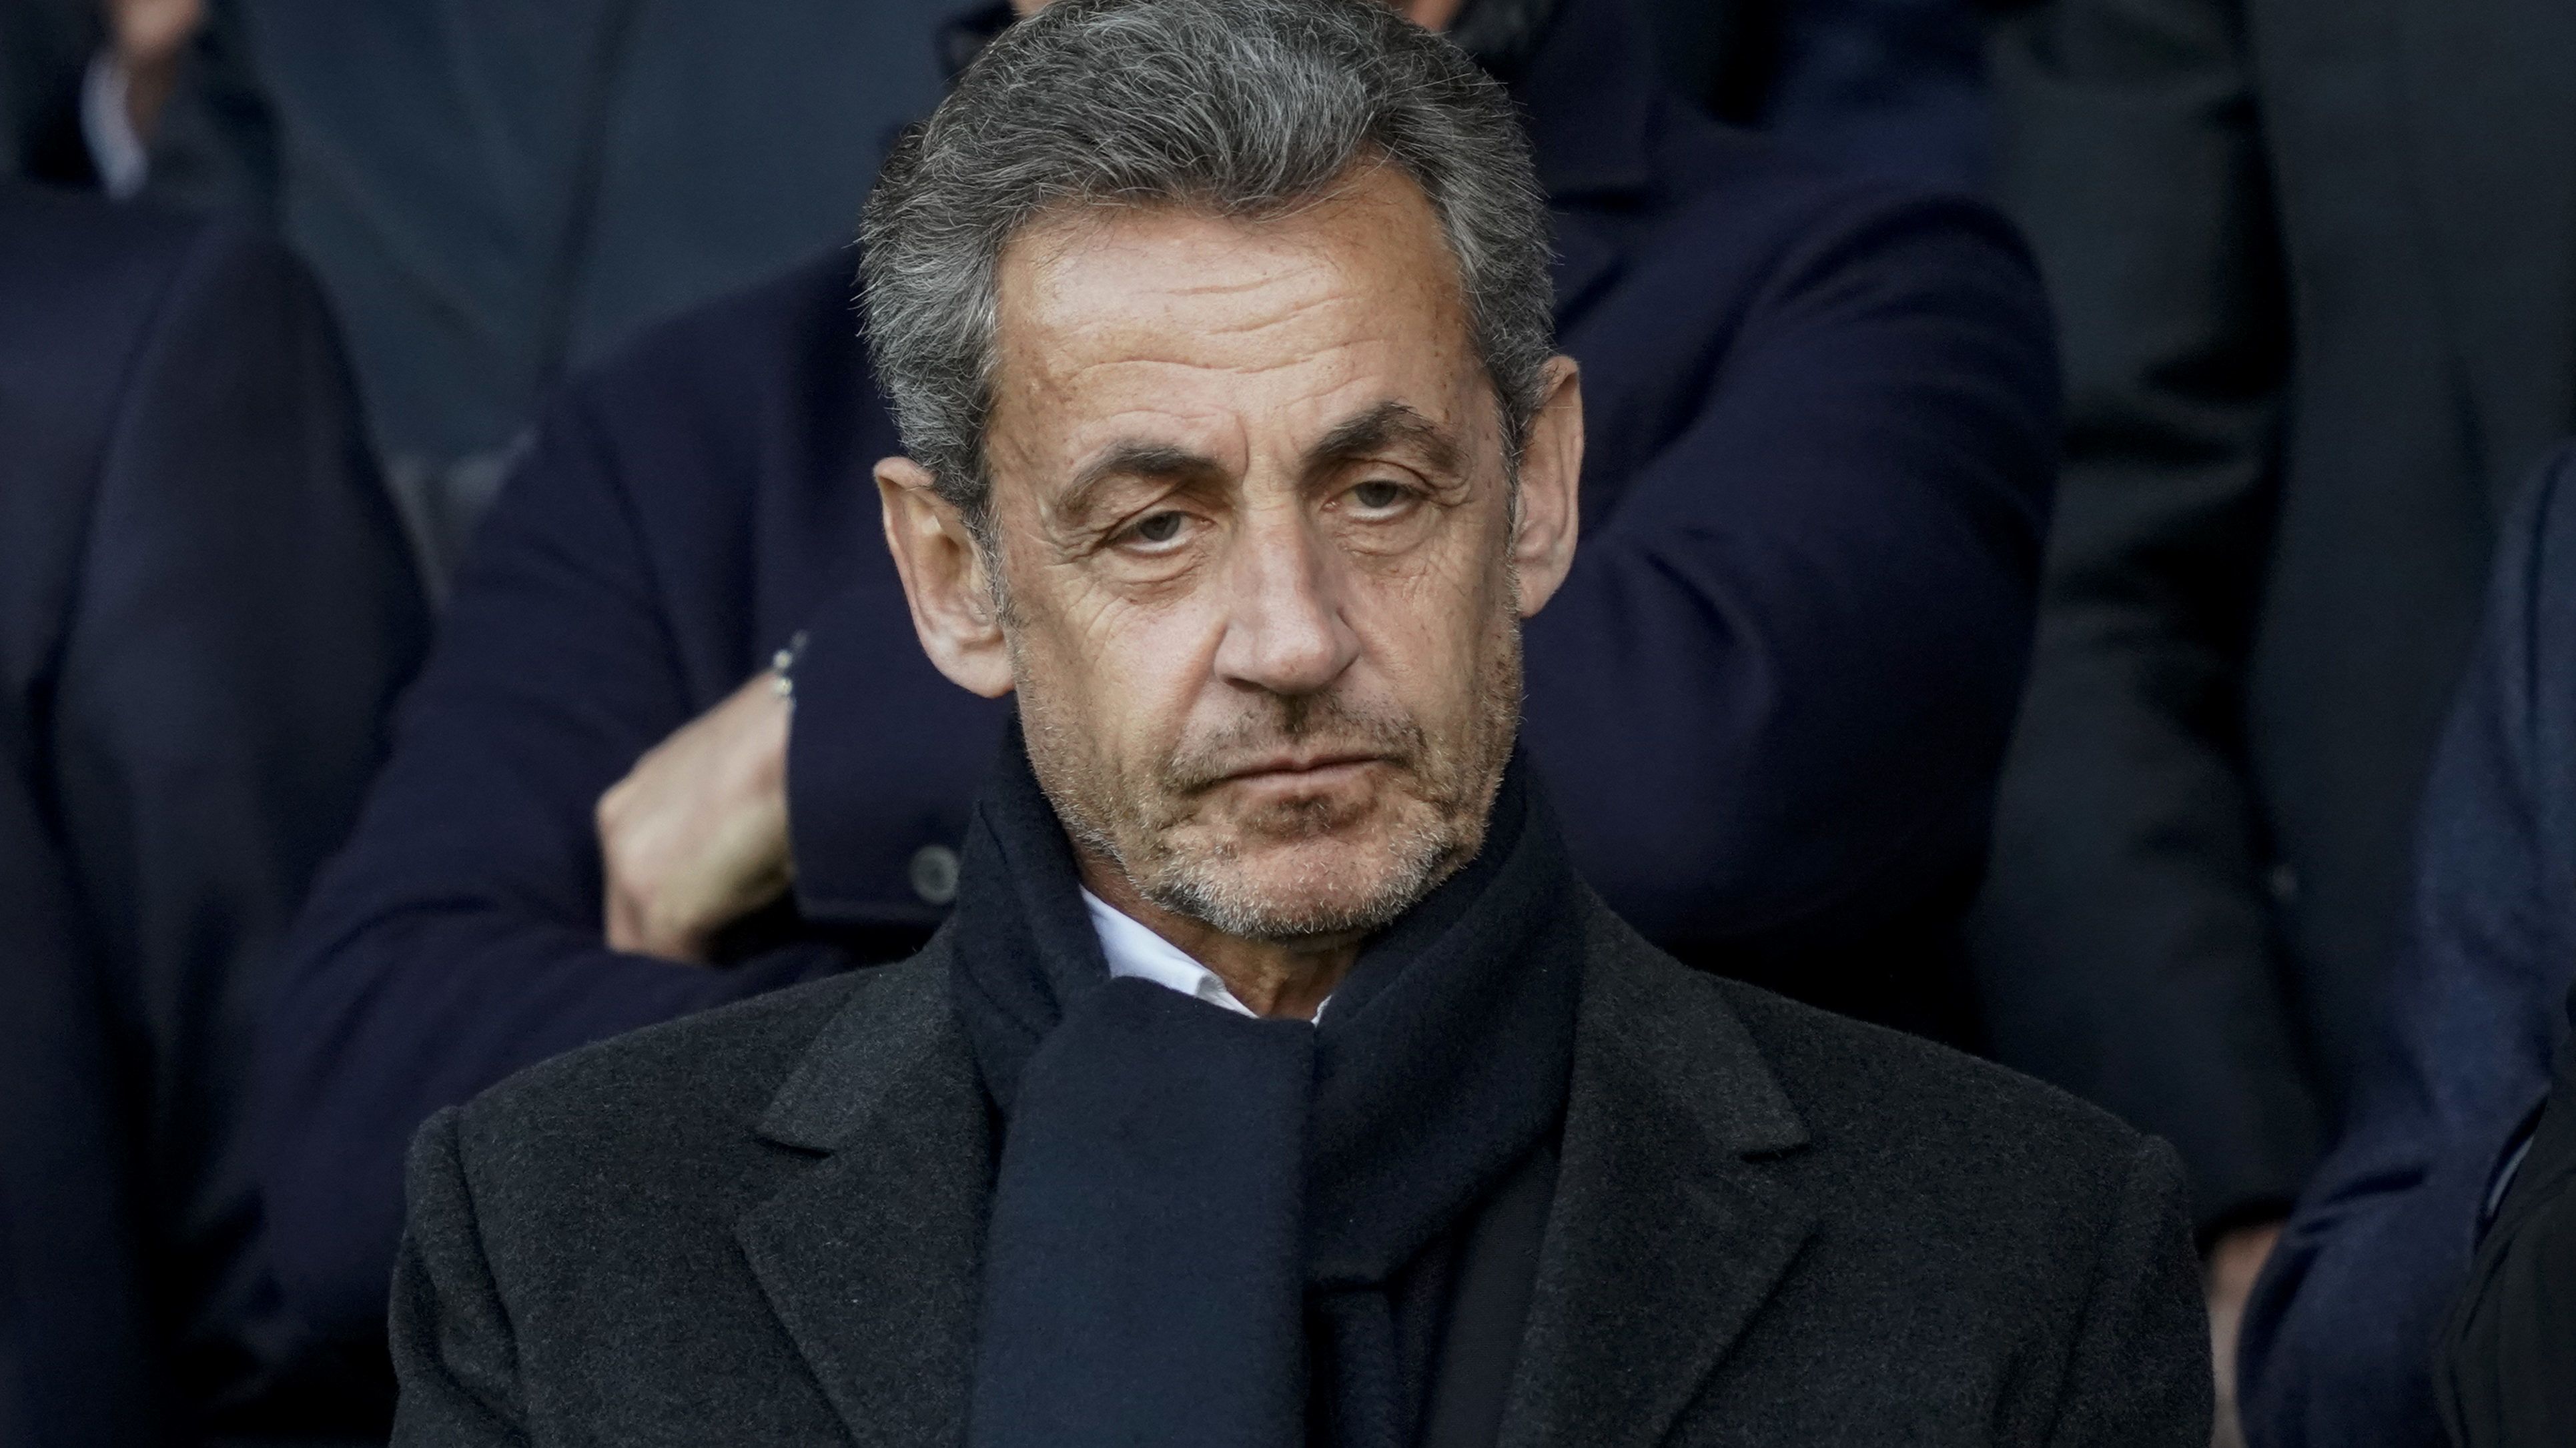 Bíróság elé állítják Sarkozyt korrupció gyanújával